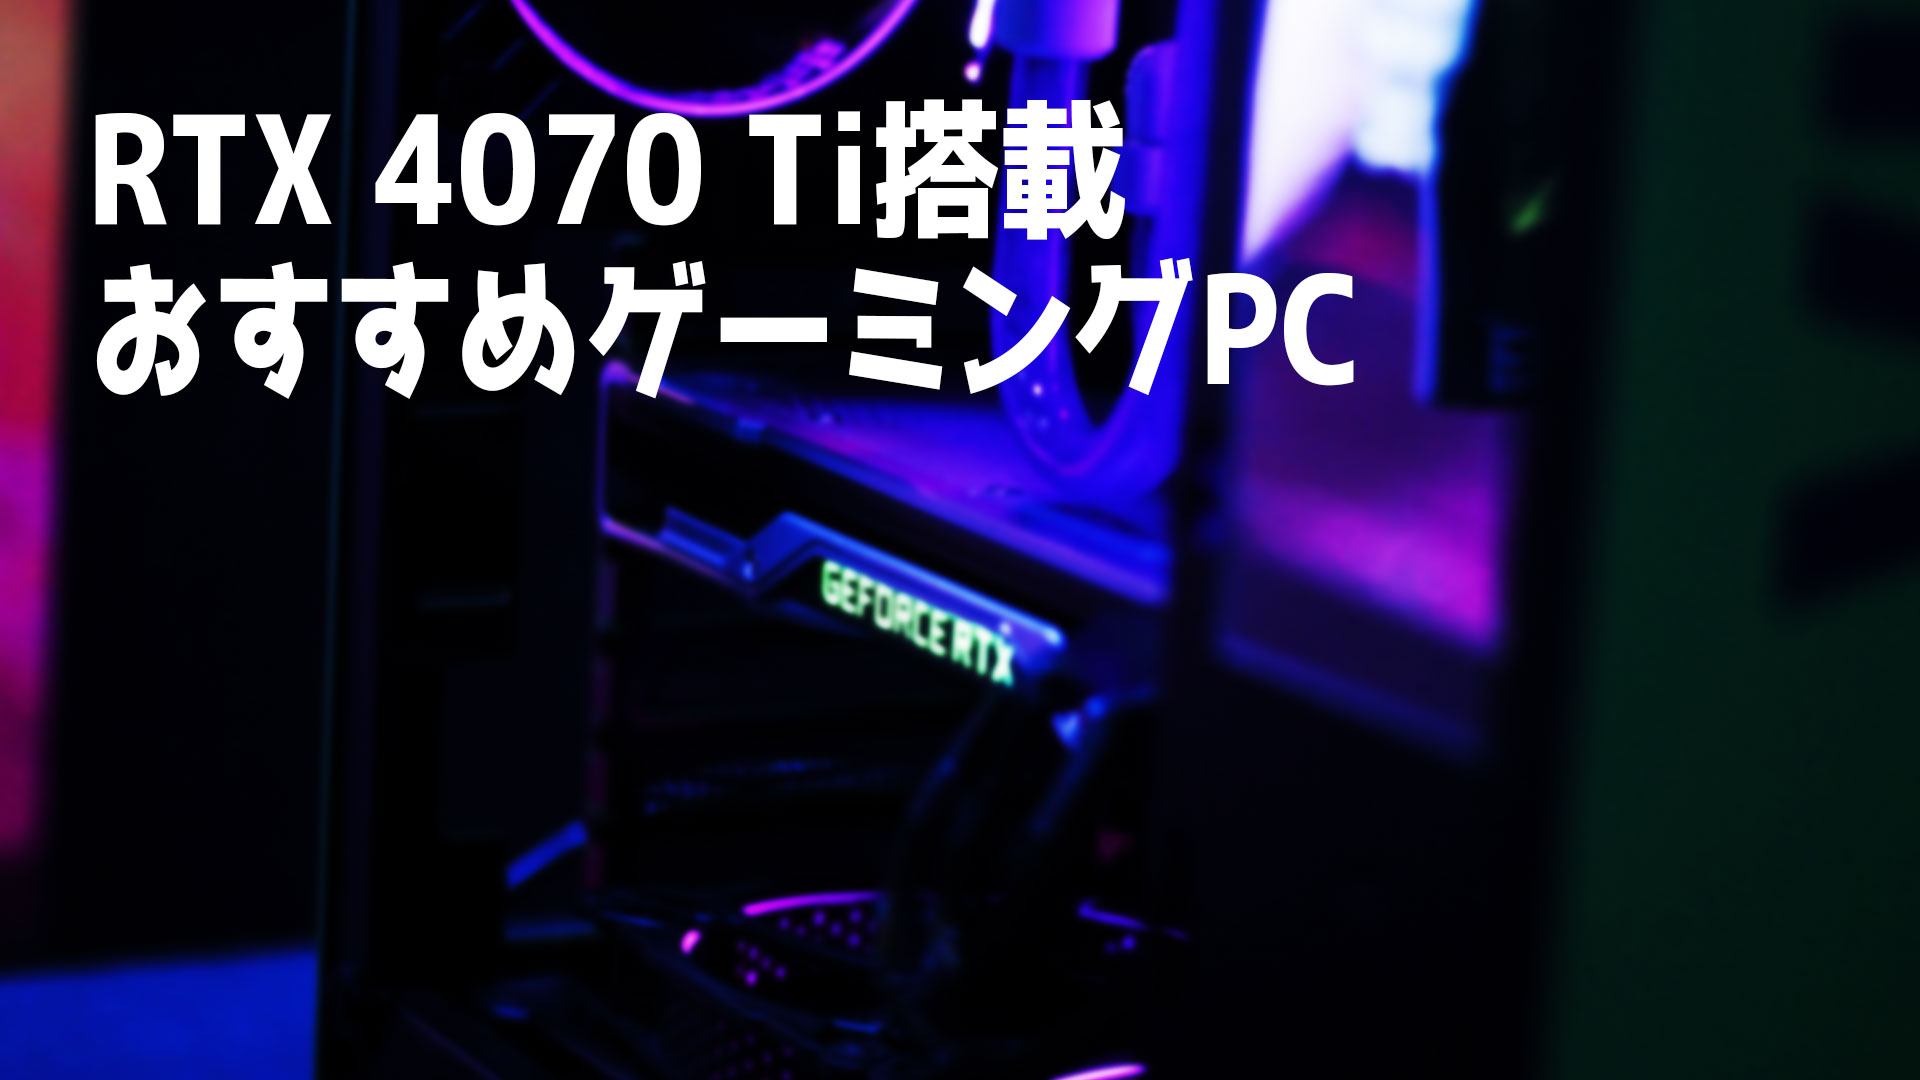 NVIDIA GeForce RTX 4070 Ti搭載のおすすめゲーミングPC3選 – クスノキの家